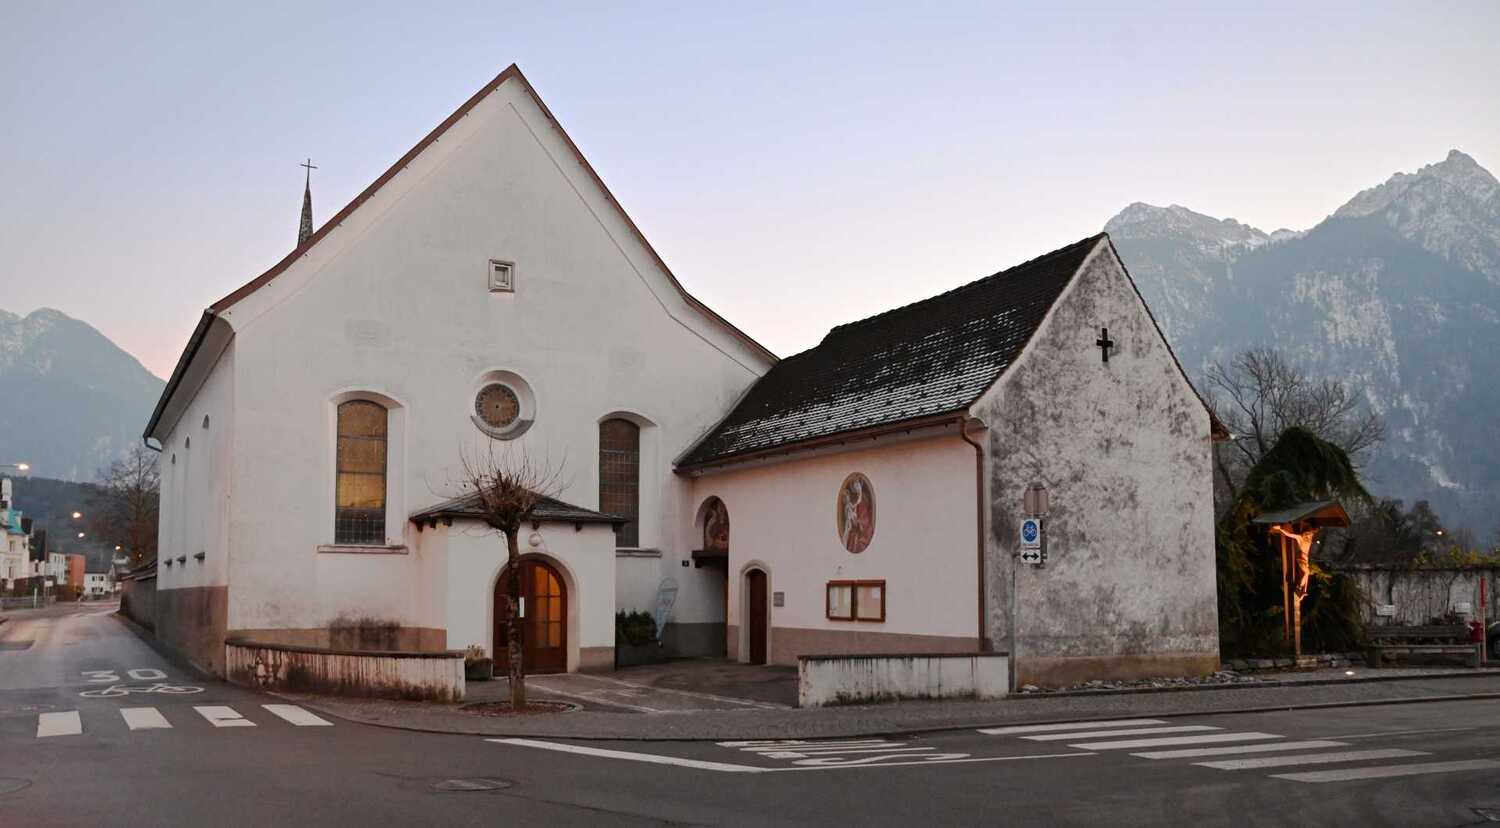 Lourdes Kapelle in Bludenz